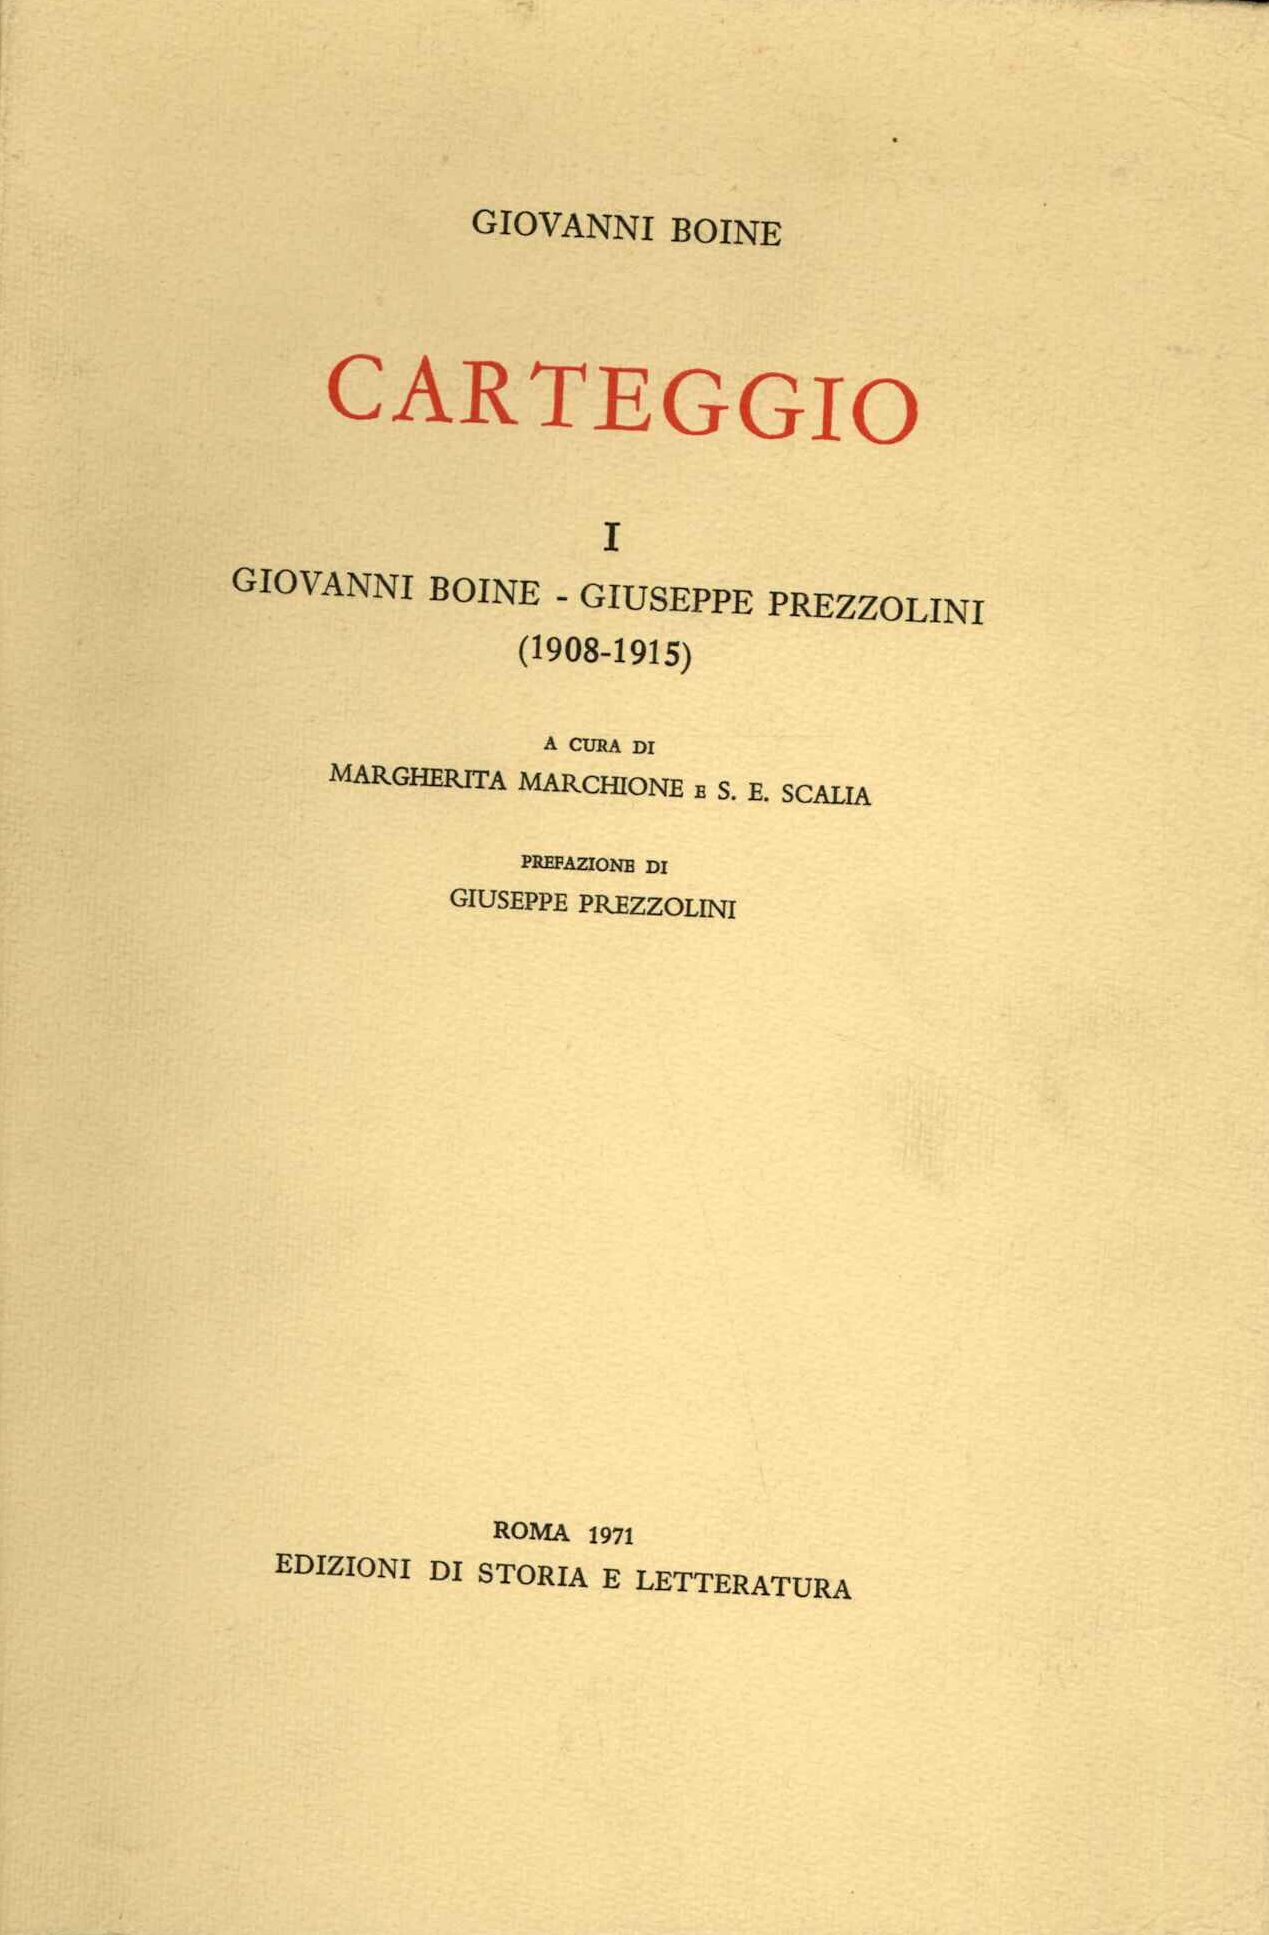 Carteggio II Giovanni Boine - Giuseppe Prezzolini (1911-1917)